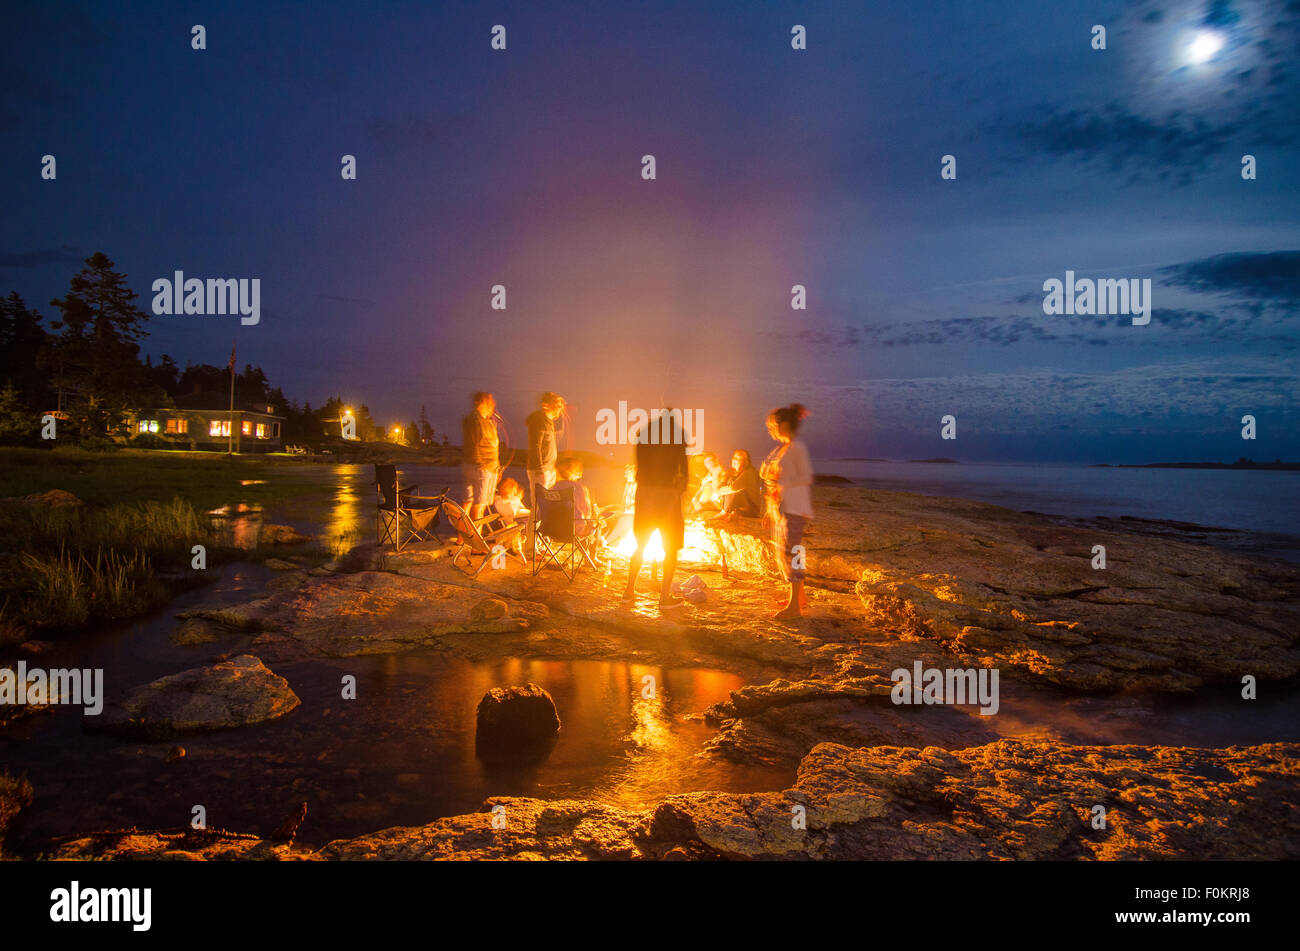 La familia y los amigos por una cálida fogata bajo una luna iluminada de noche como marea alta escurre lentamente hacia el interior. Foto de stock